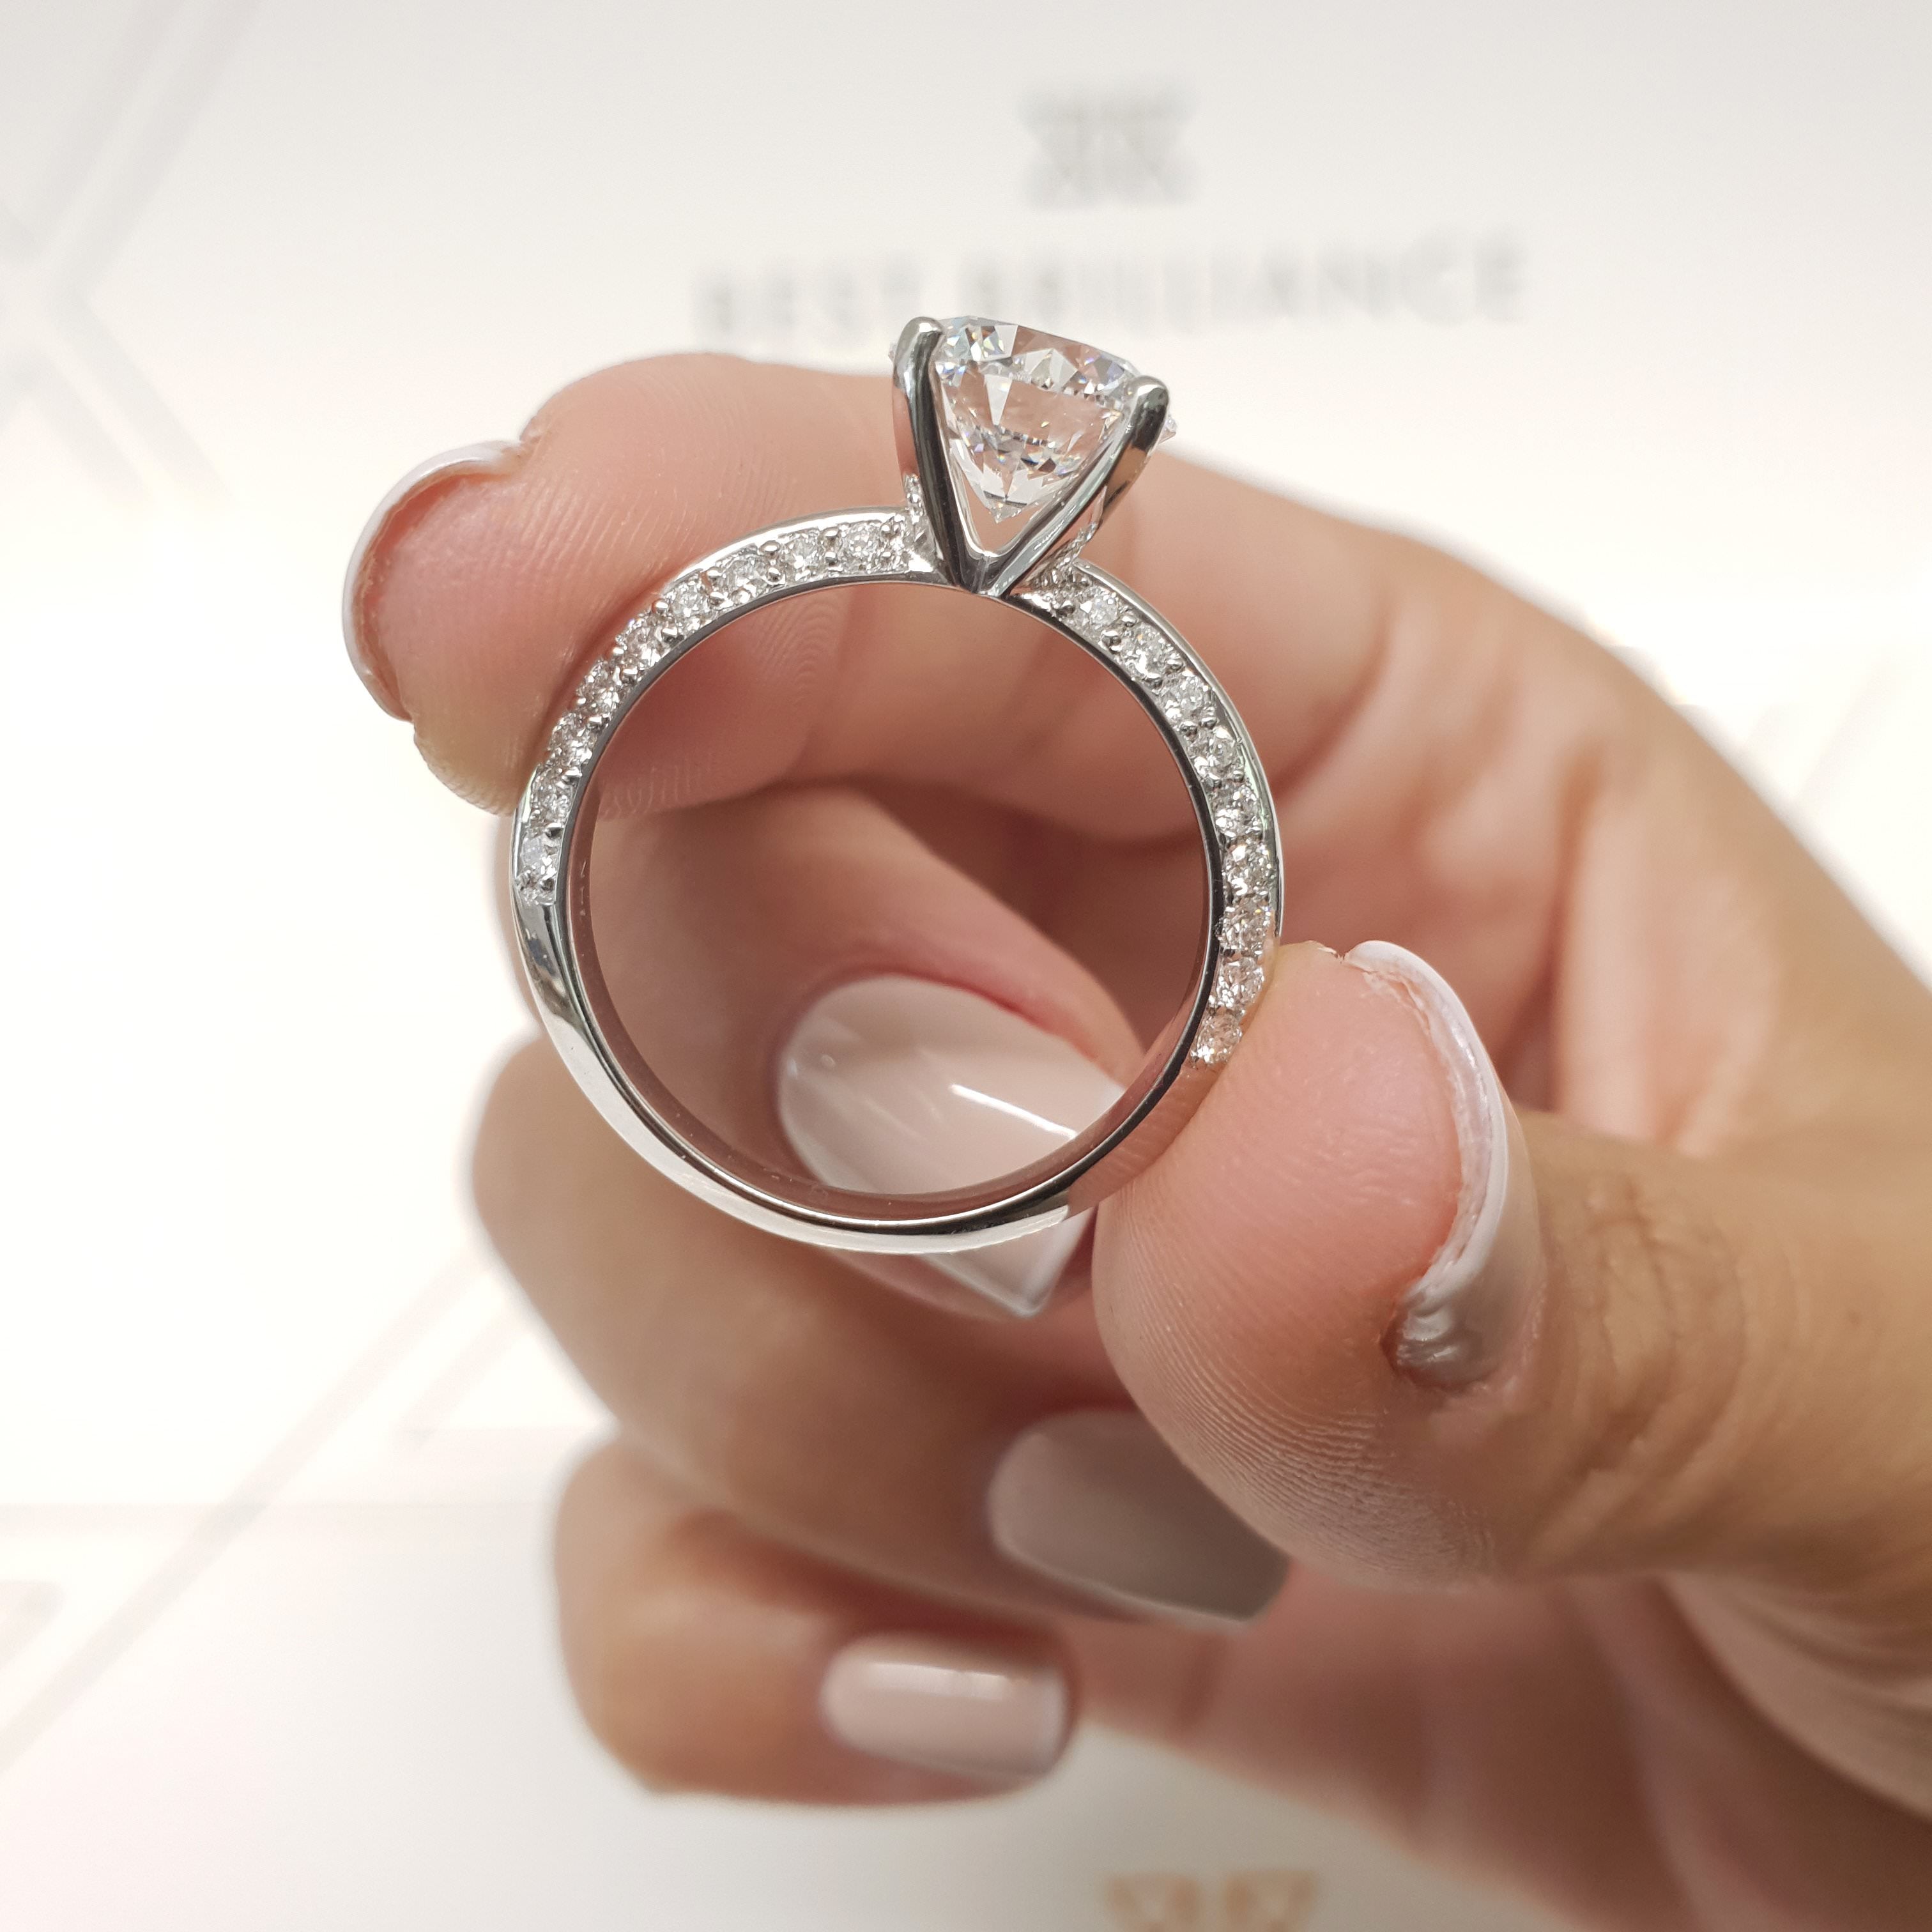 Ariana Diamond Engagement Ring -14K White Gold